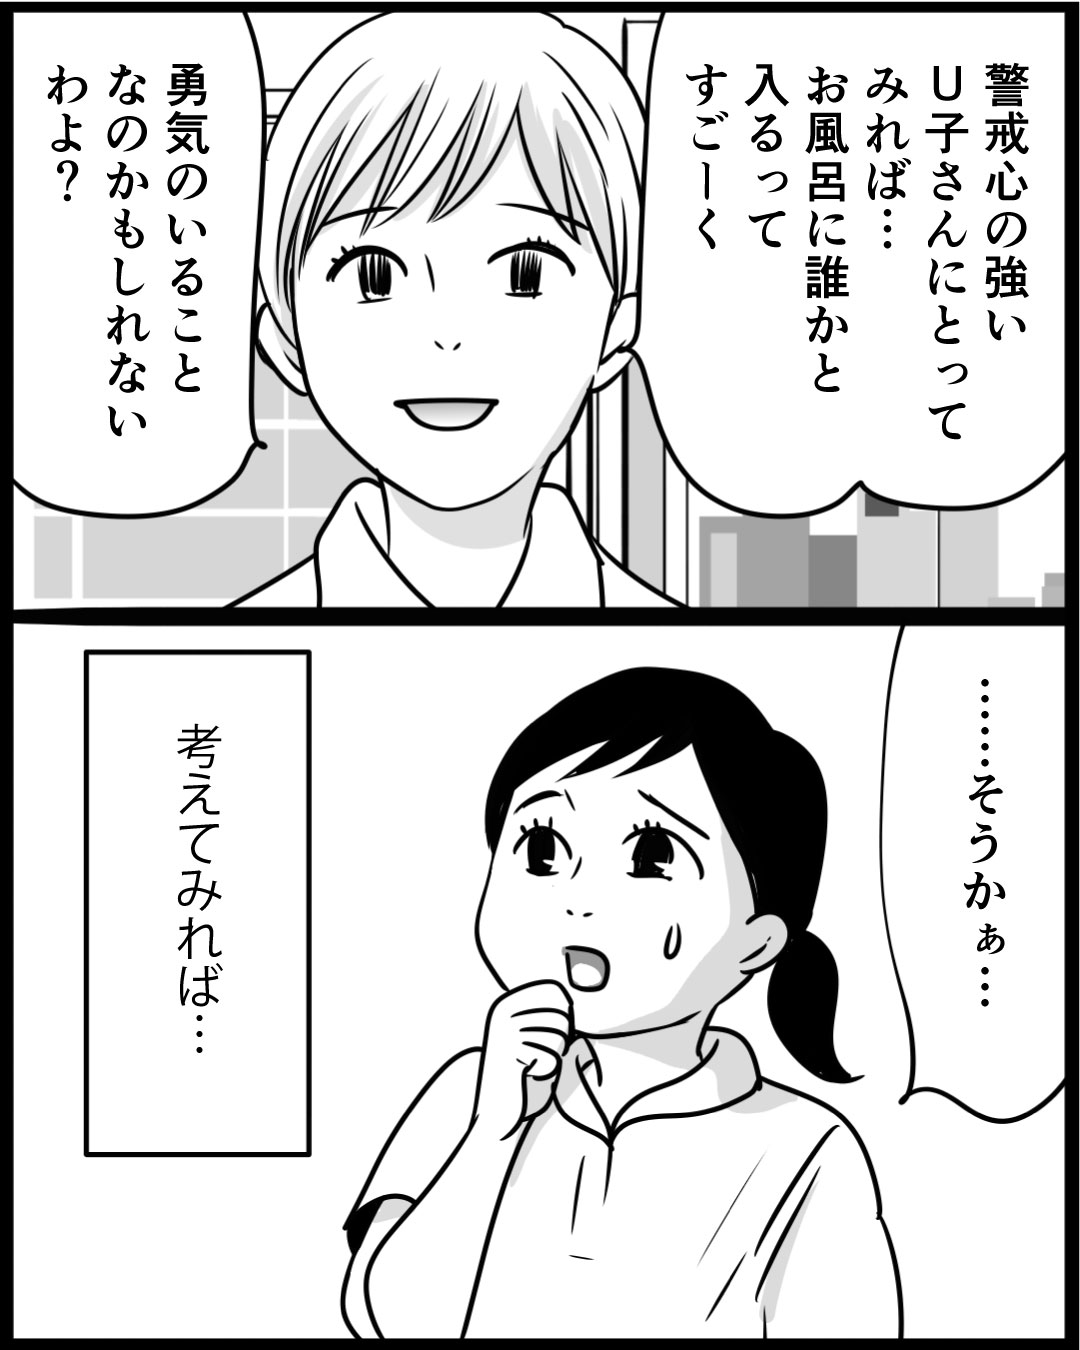 漫画「100年ぶりに入浴したU子さん」15